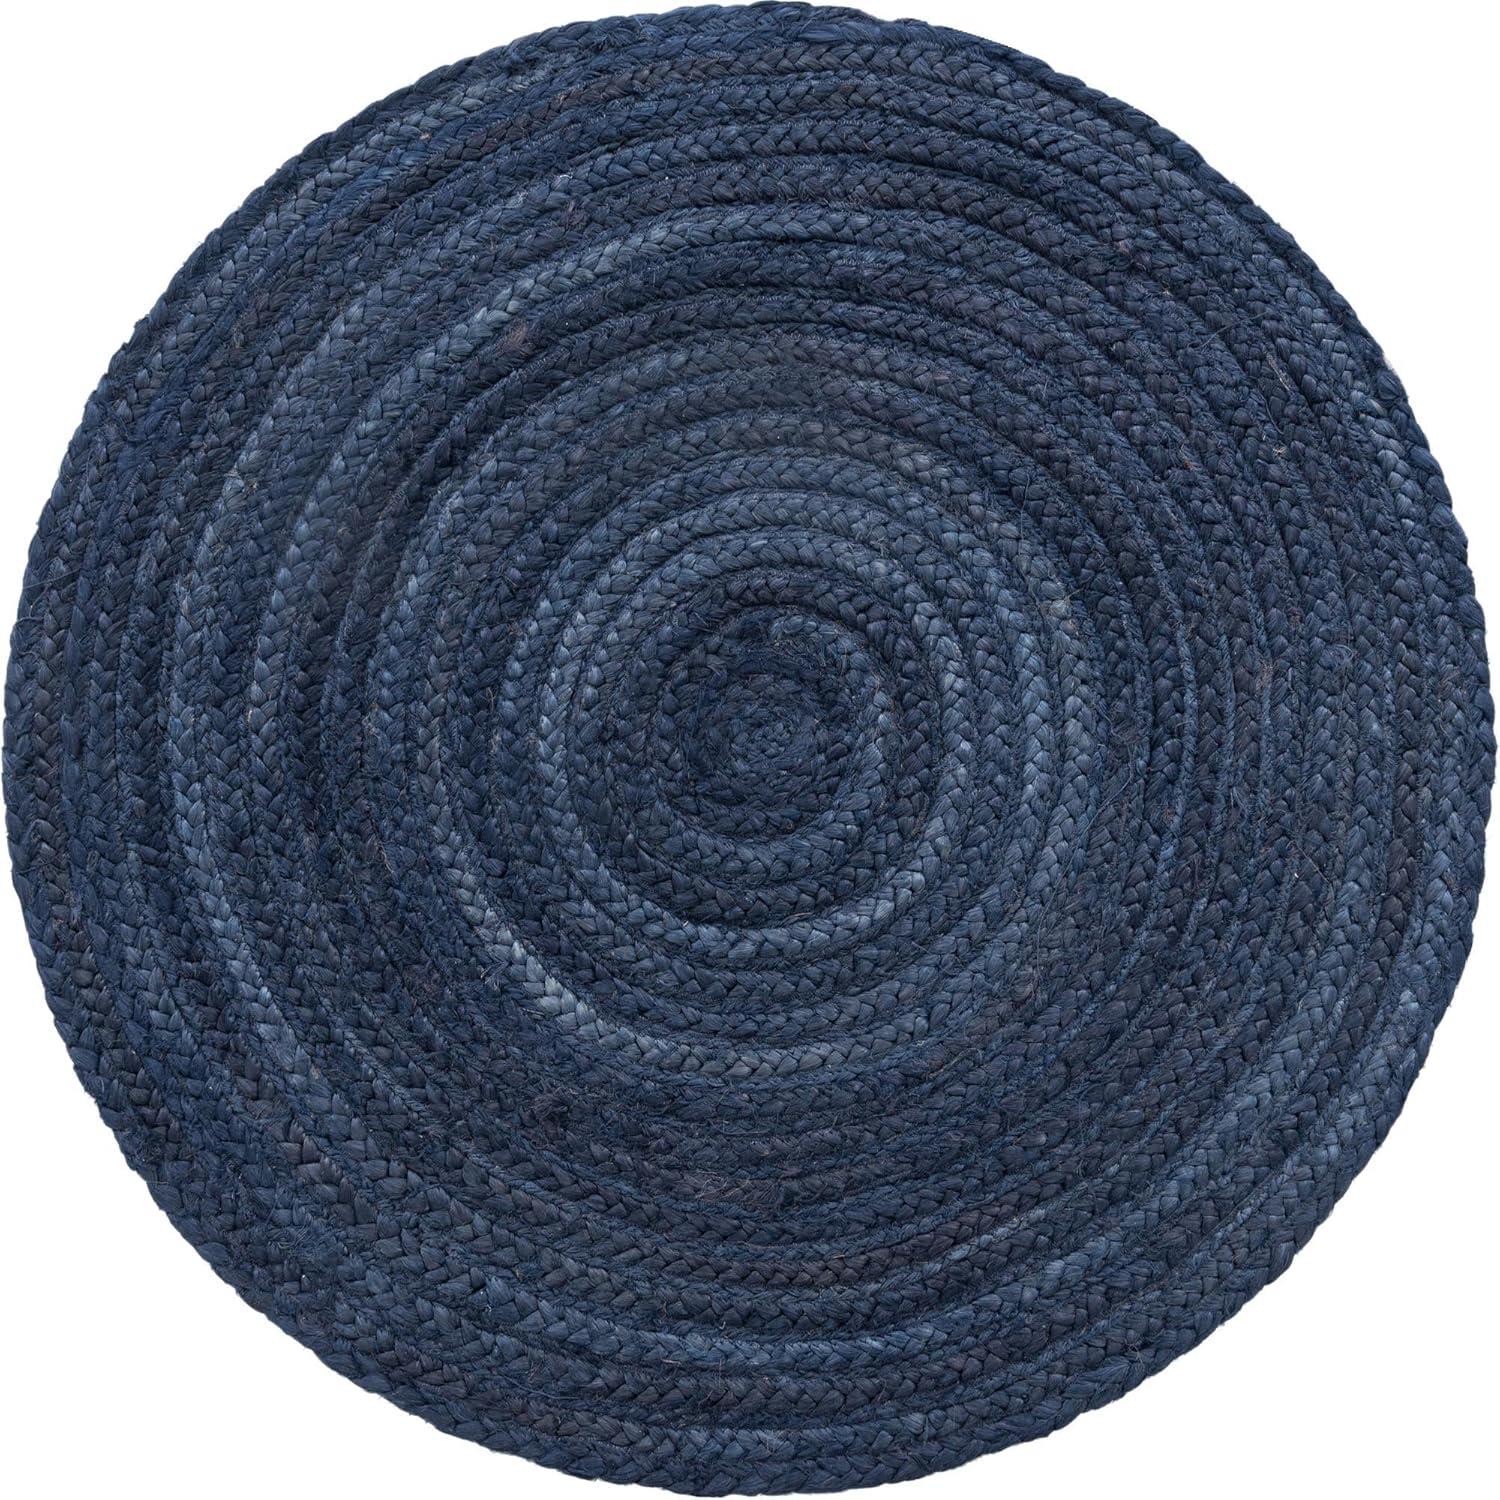 Handmade Navy Blue Braided Jute 3'3" Round Rug